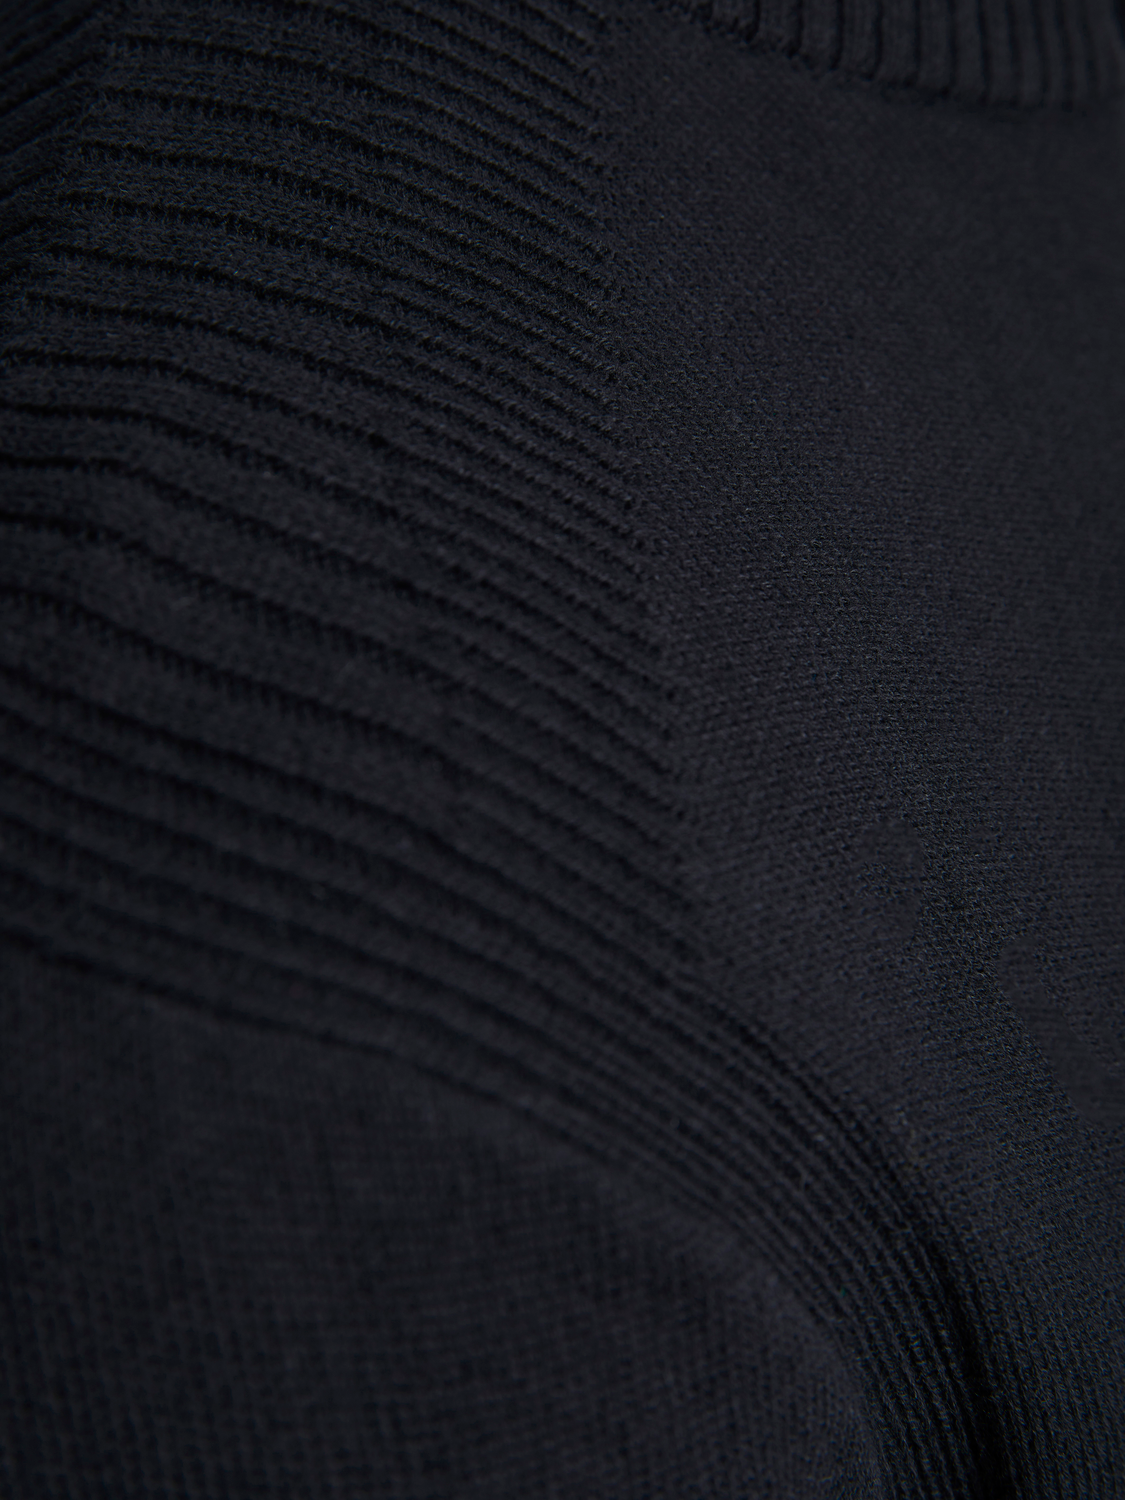 Jersey negro cuello alto con cremallera - JCOLEAD